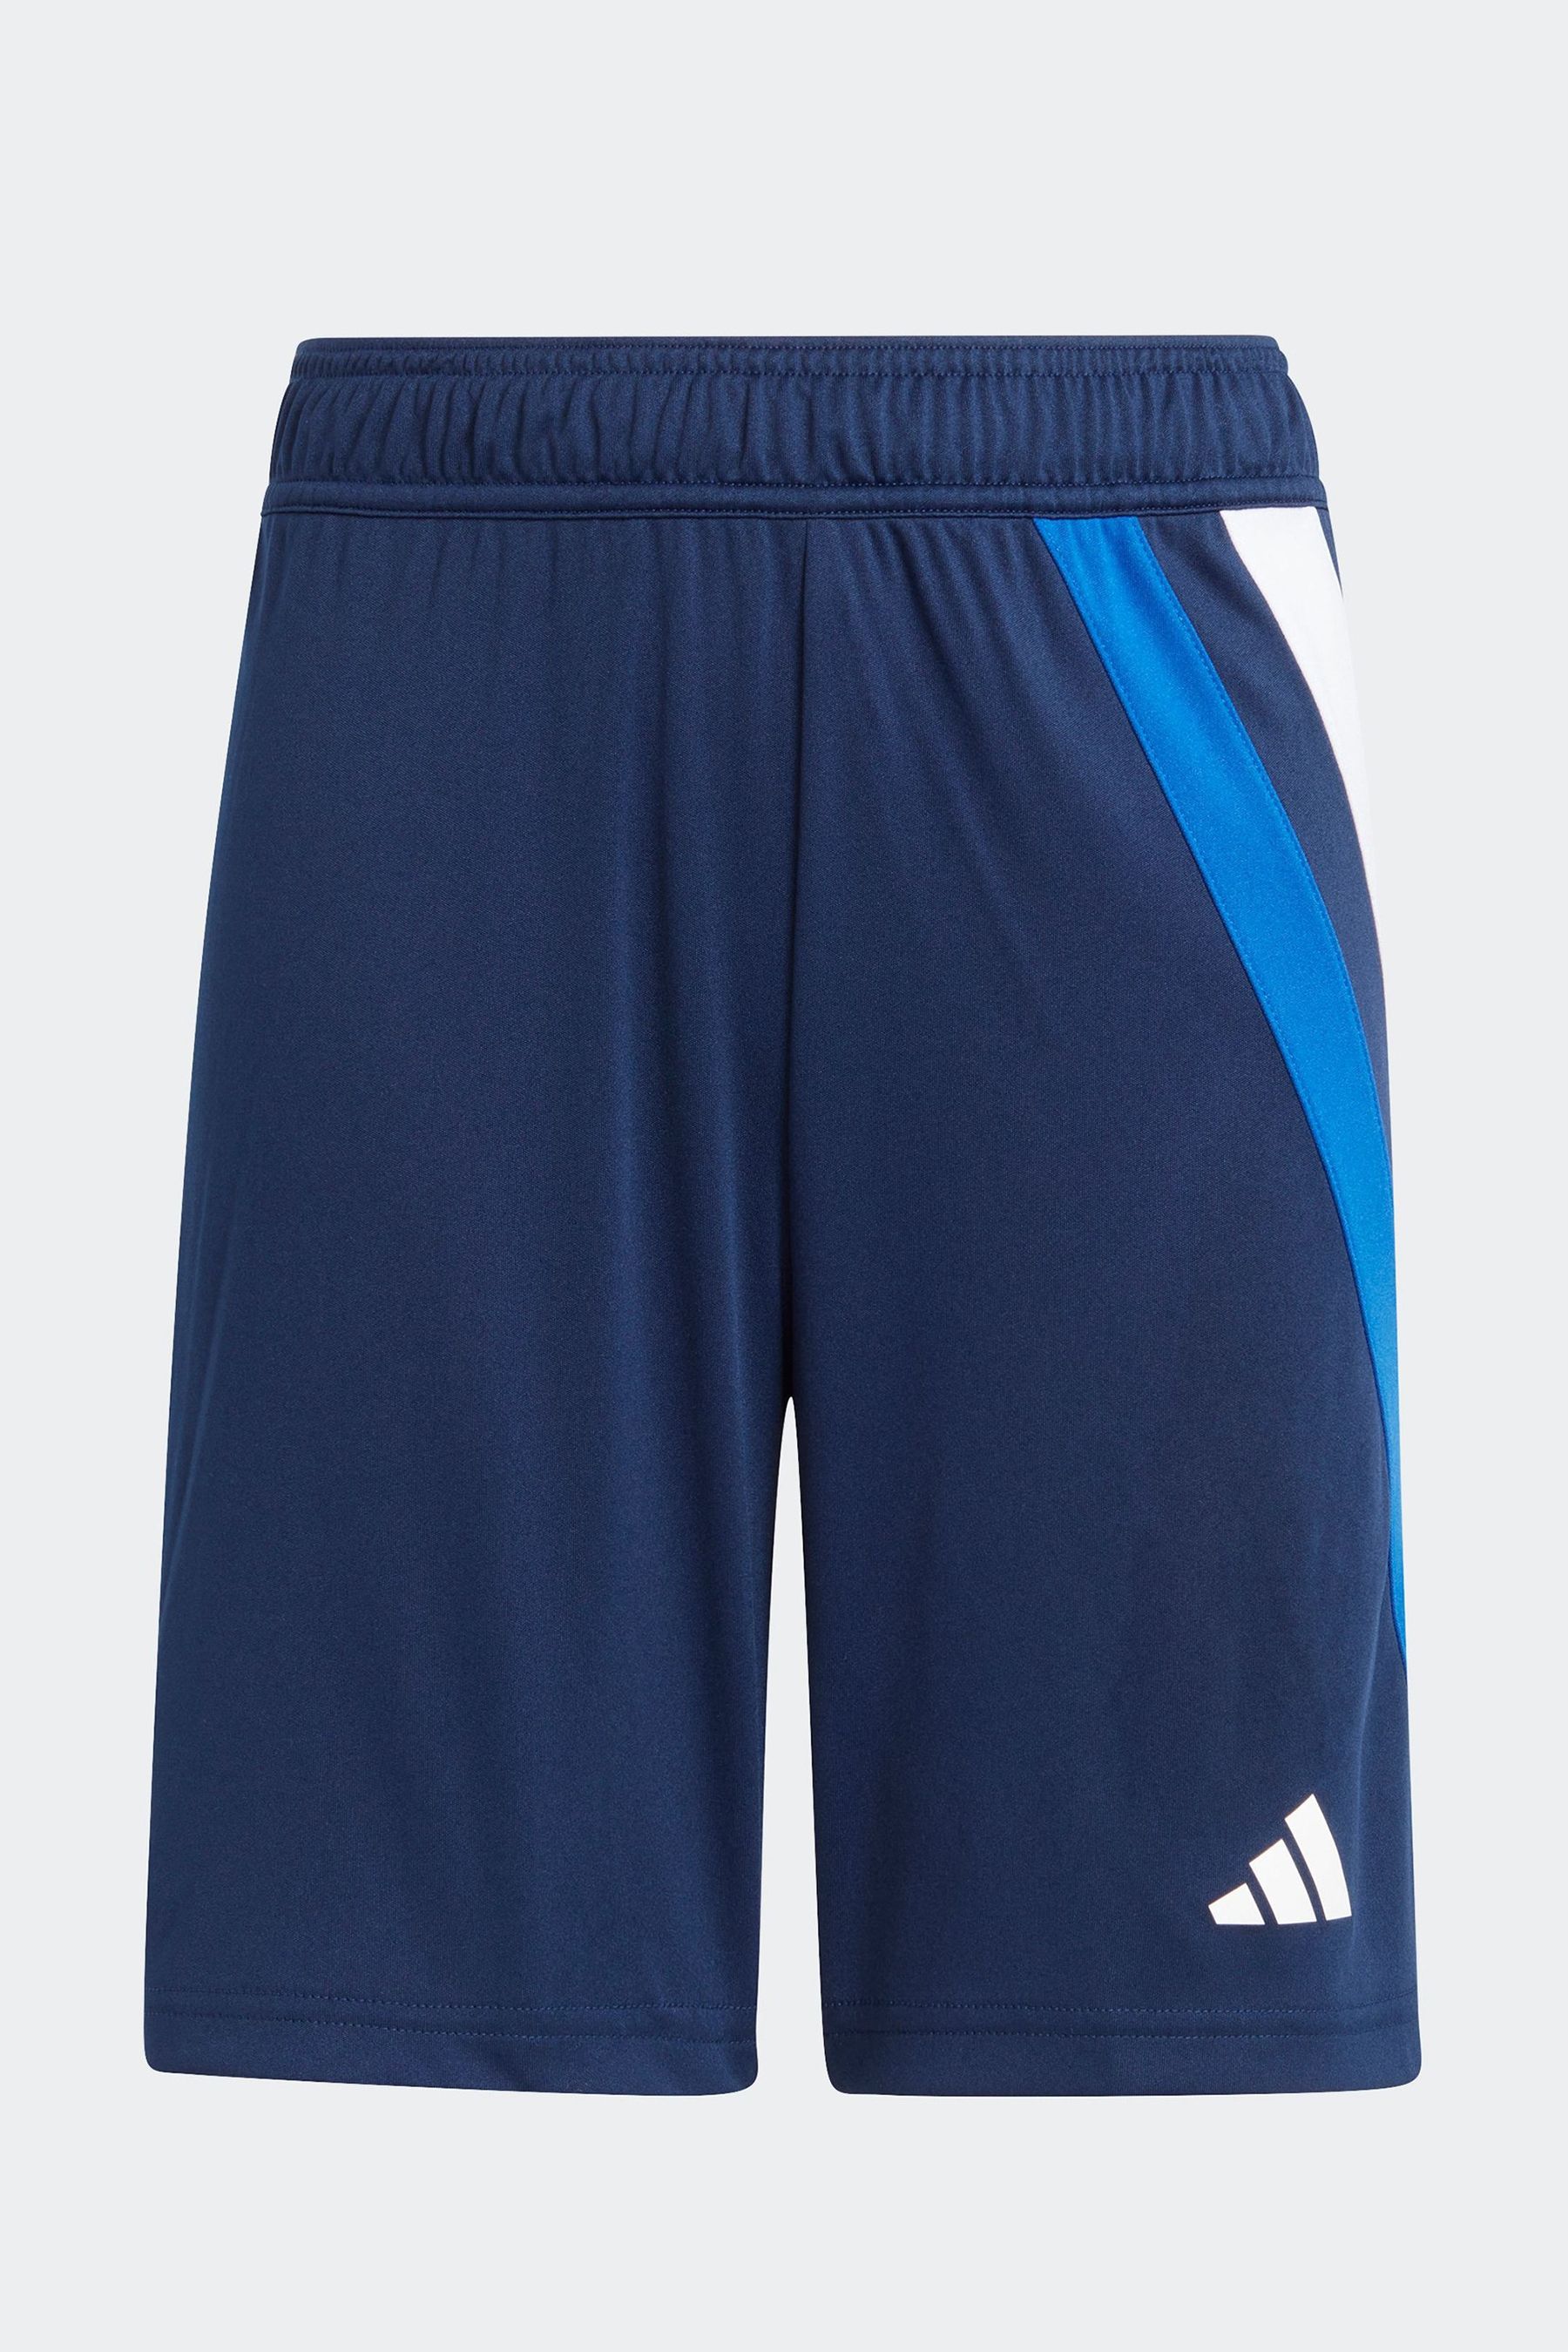 Футбольные шорты Junior Fortore 23 adidas, синий